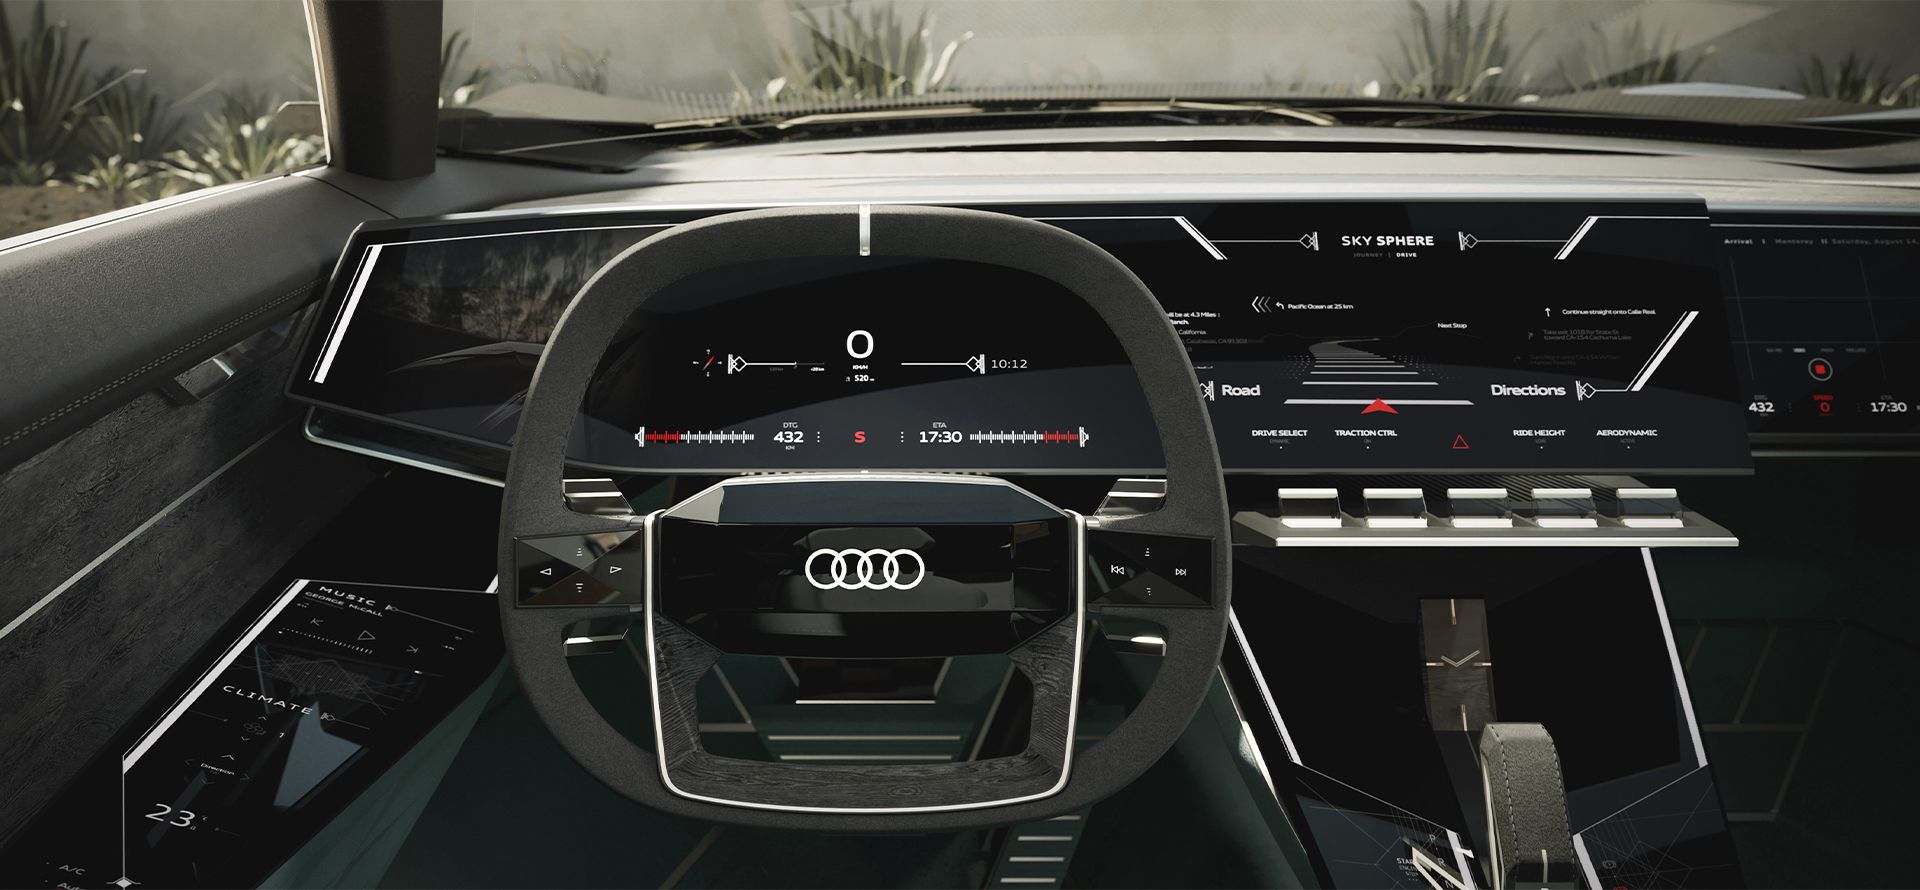 Audi skysphere Cockpit.